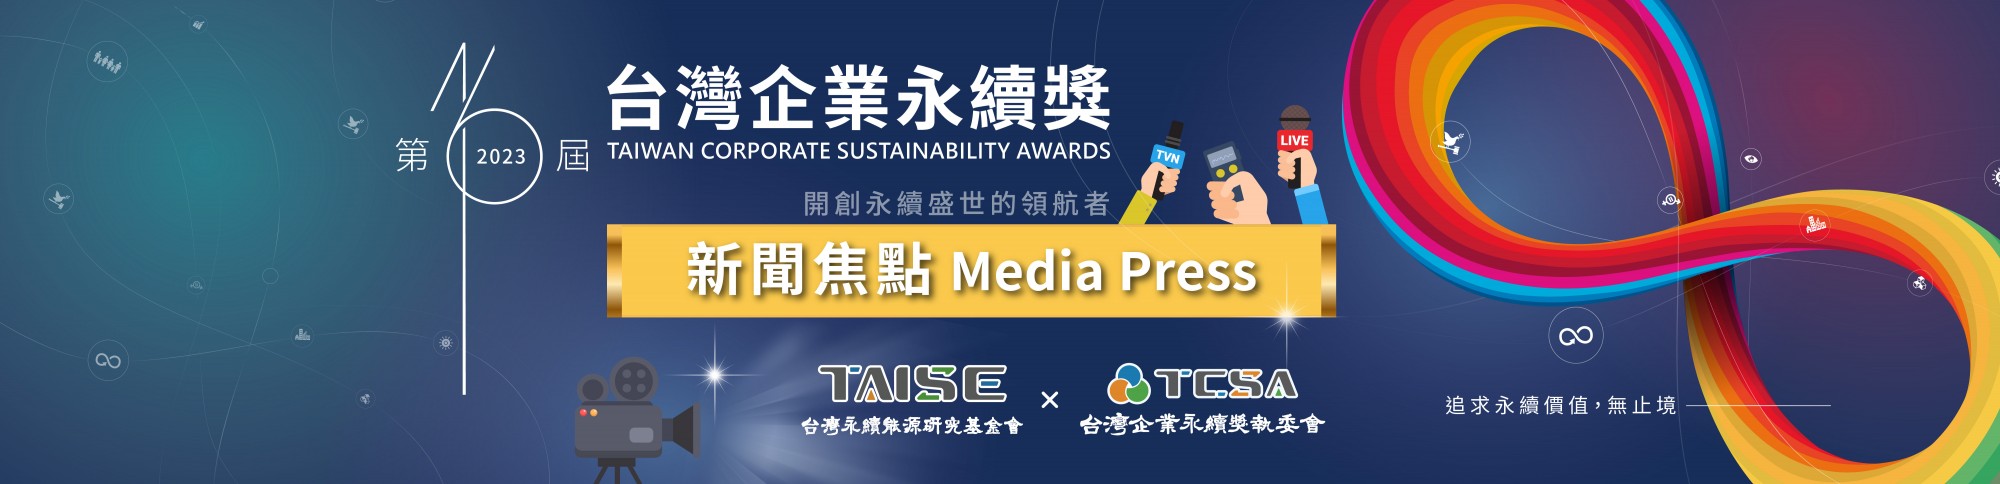 2023第16屆台灣企業永續獎新聞露出 分享榮耀與永續成果